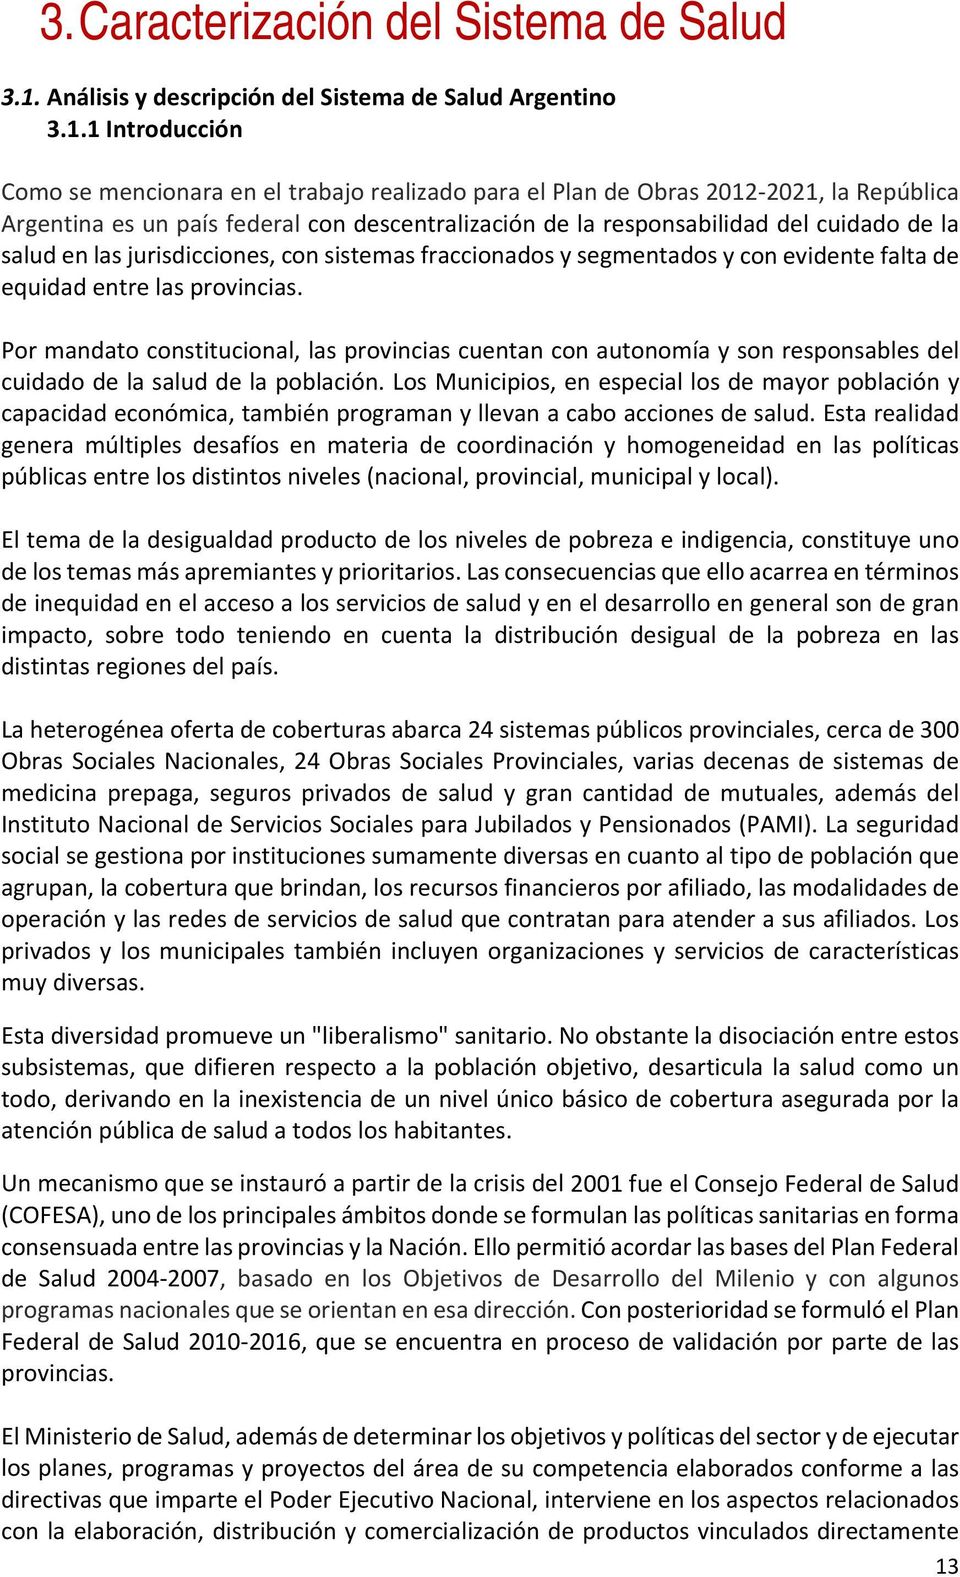 1 Introducción Como se mencionara en el trabajo realizado para el Plan de Obras 2012 2021, la República Argentina es un país federal con descentralización de la responsabilidad del cuidado de la